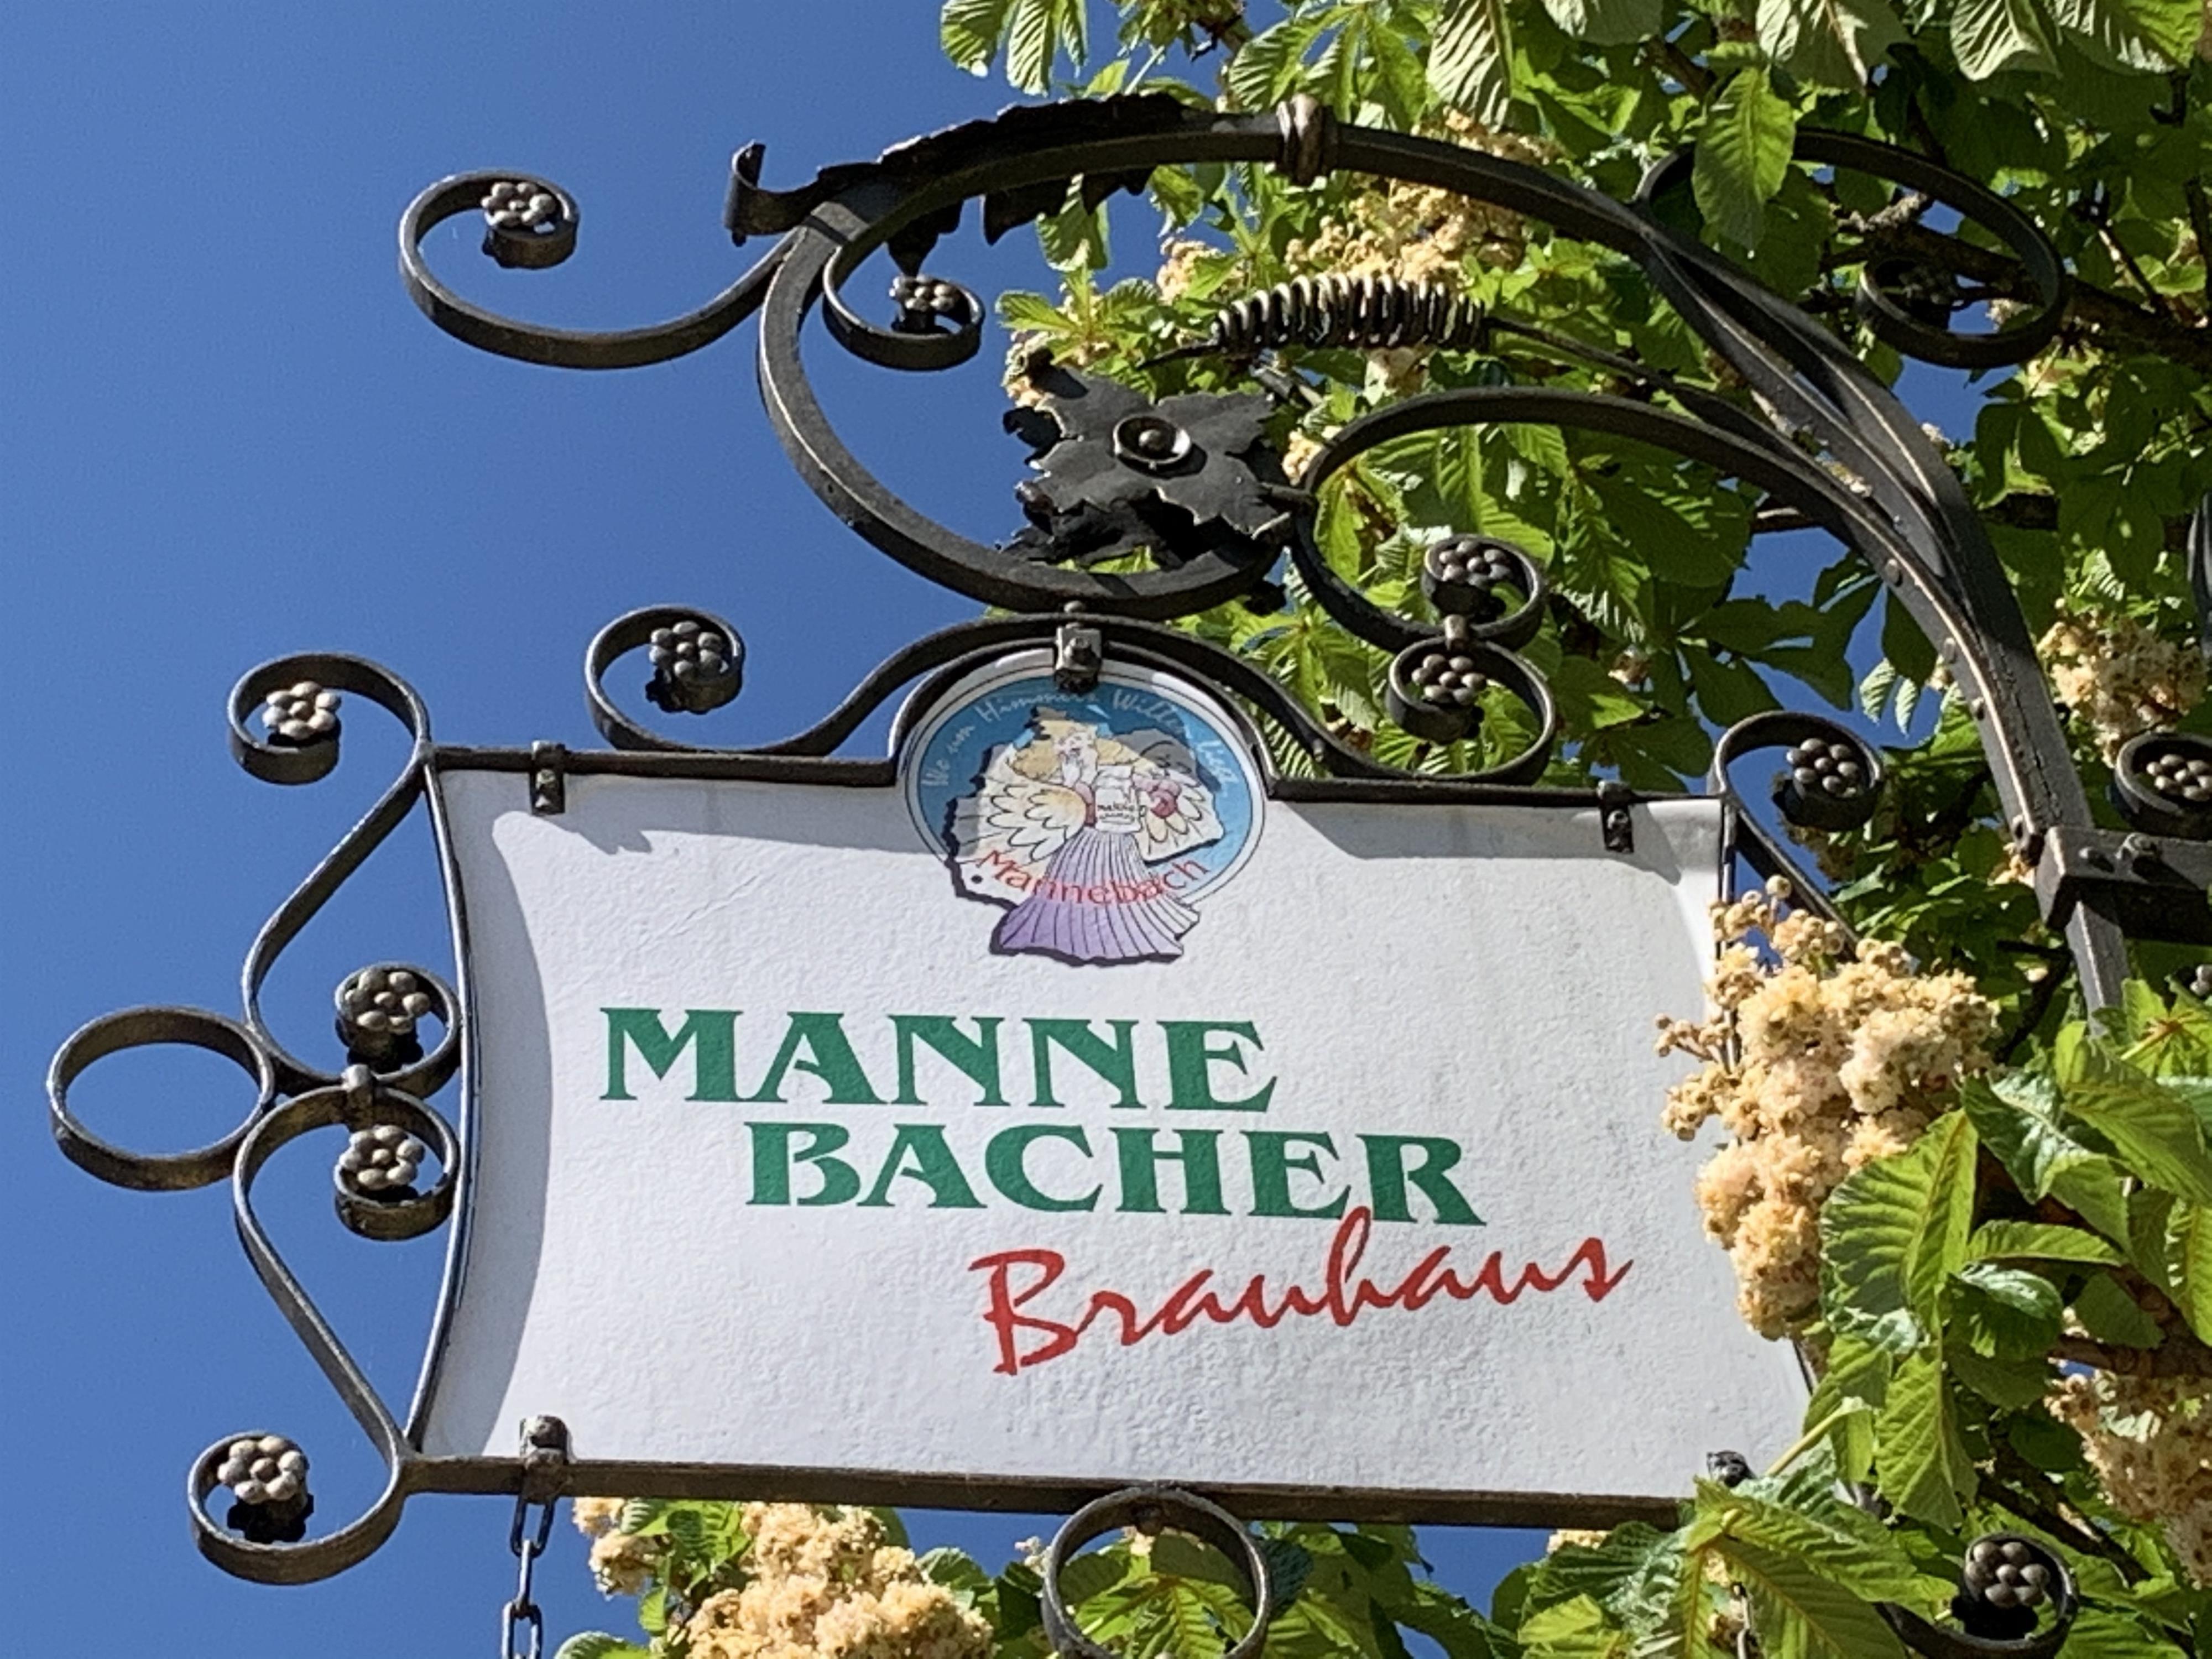 Mannebacher Brauhaus (2)